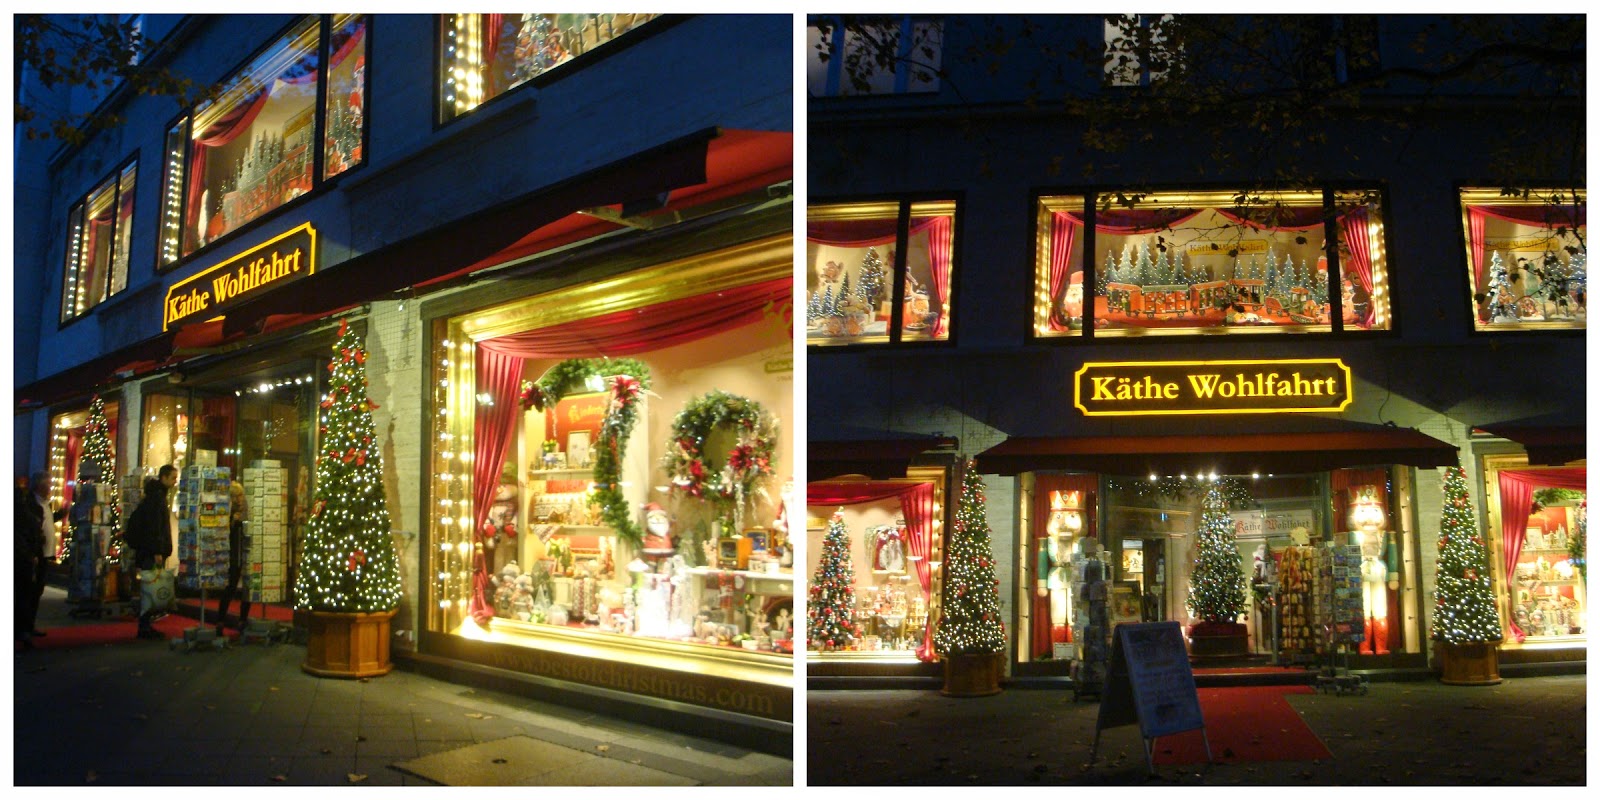 loja Käthe Wohlfahrt de decoração natalina em Berlim, Alemanha